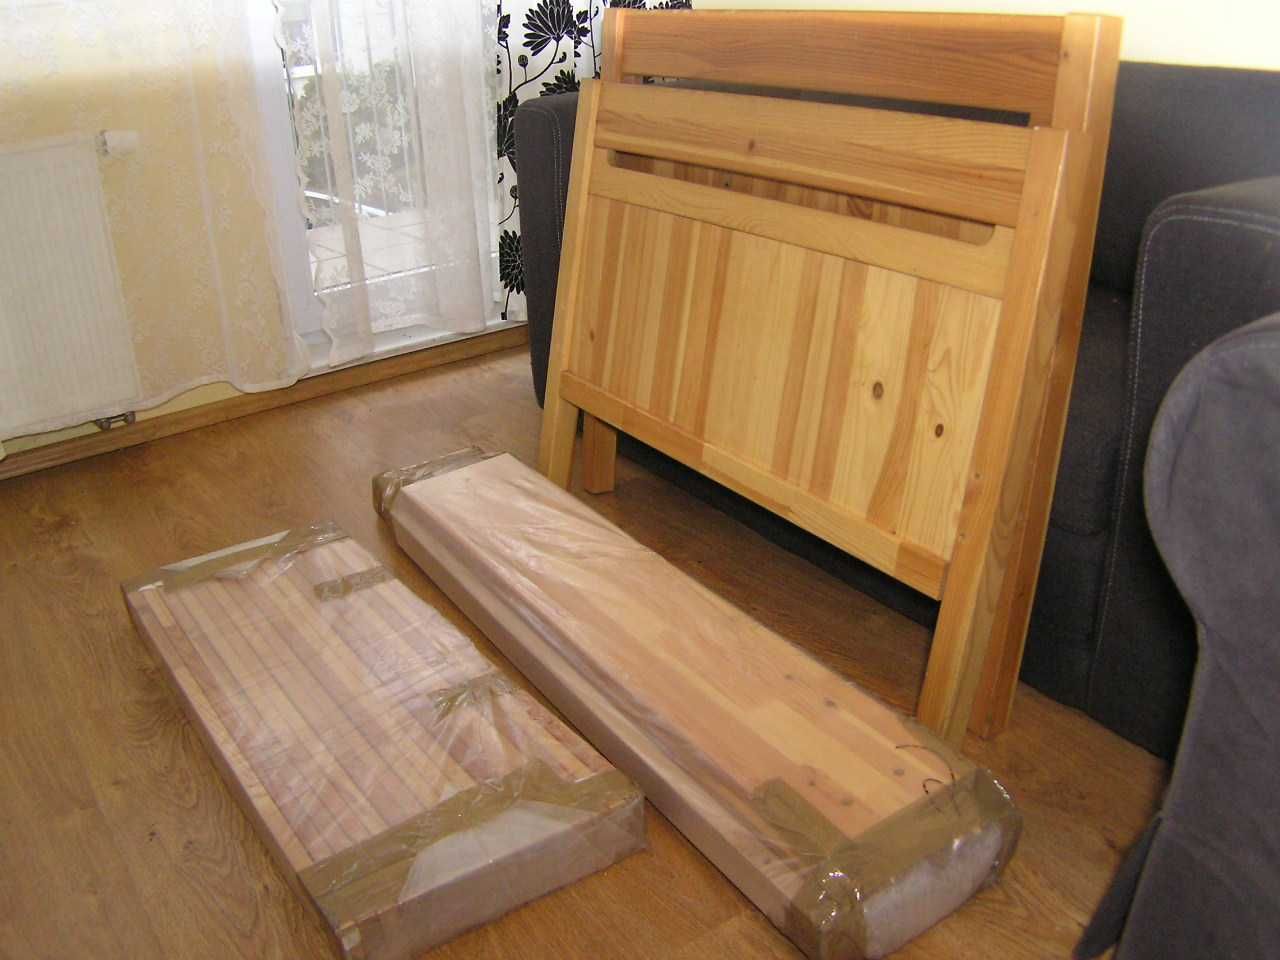 Łóżeczko dziecięce drewniane złożone - w kawałkach dla dziecka